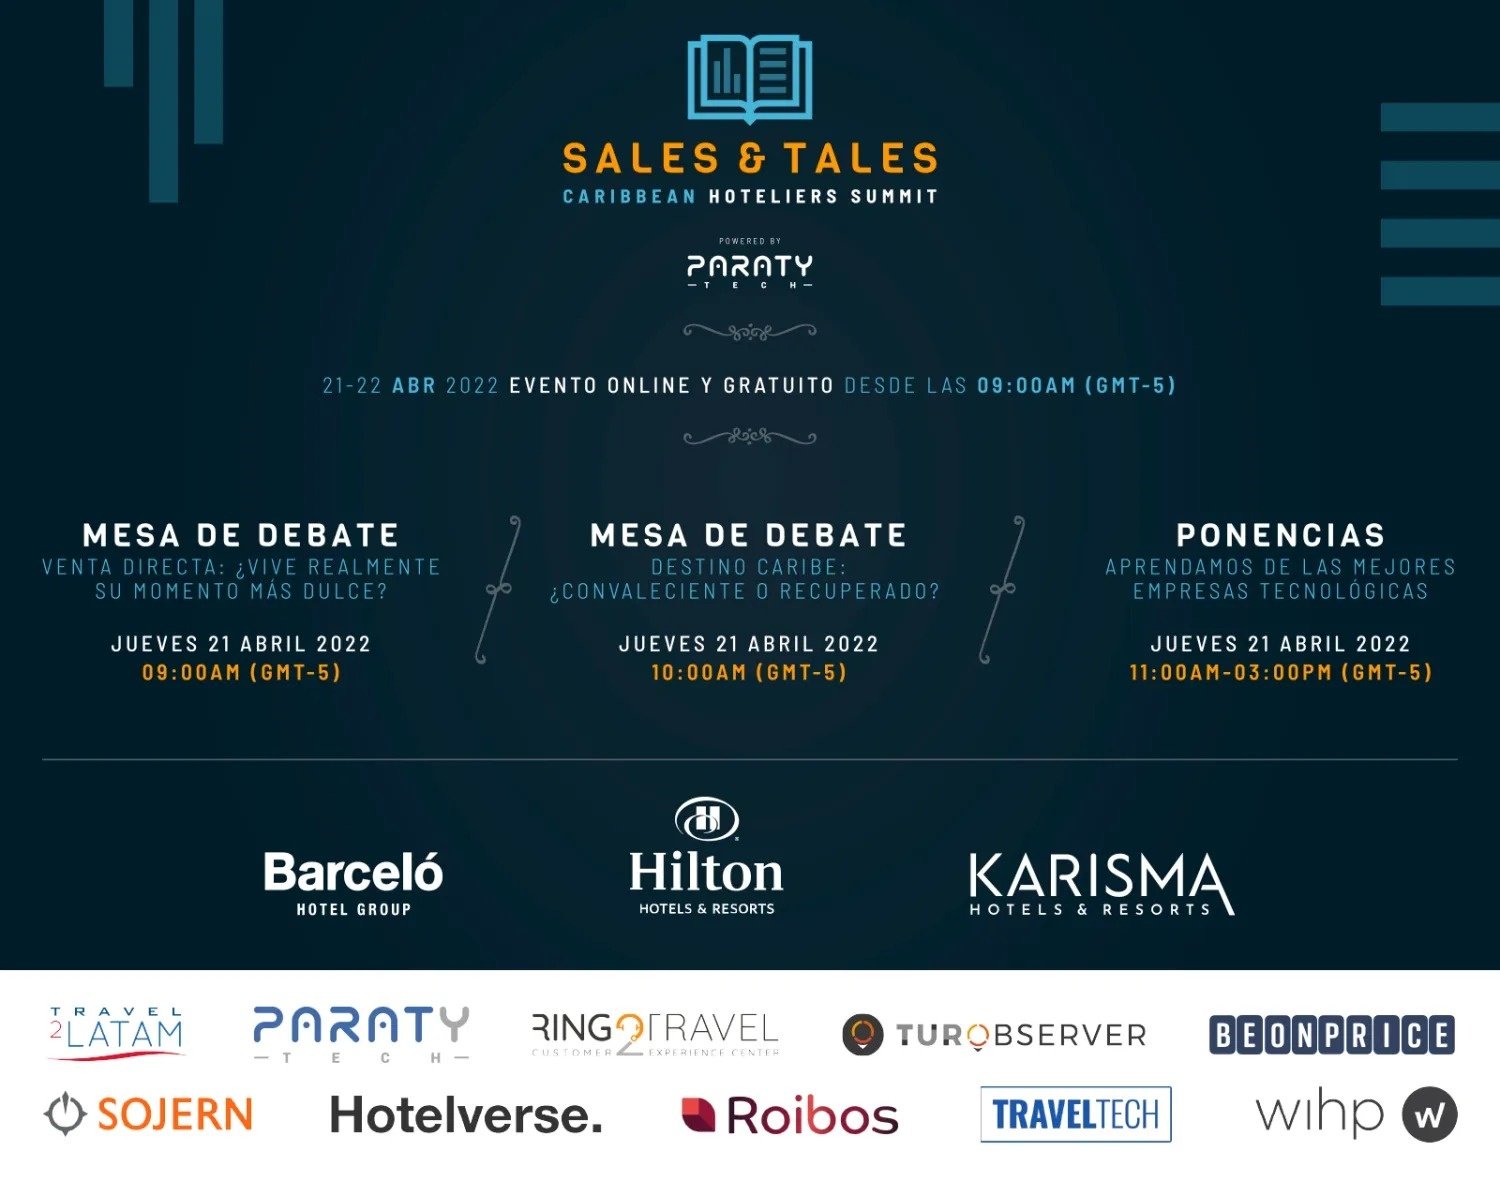 El 21 de abril, hoteleros y tecnológicas se dan cita en Sales & Tales Caribbean Hoteliers Summit